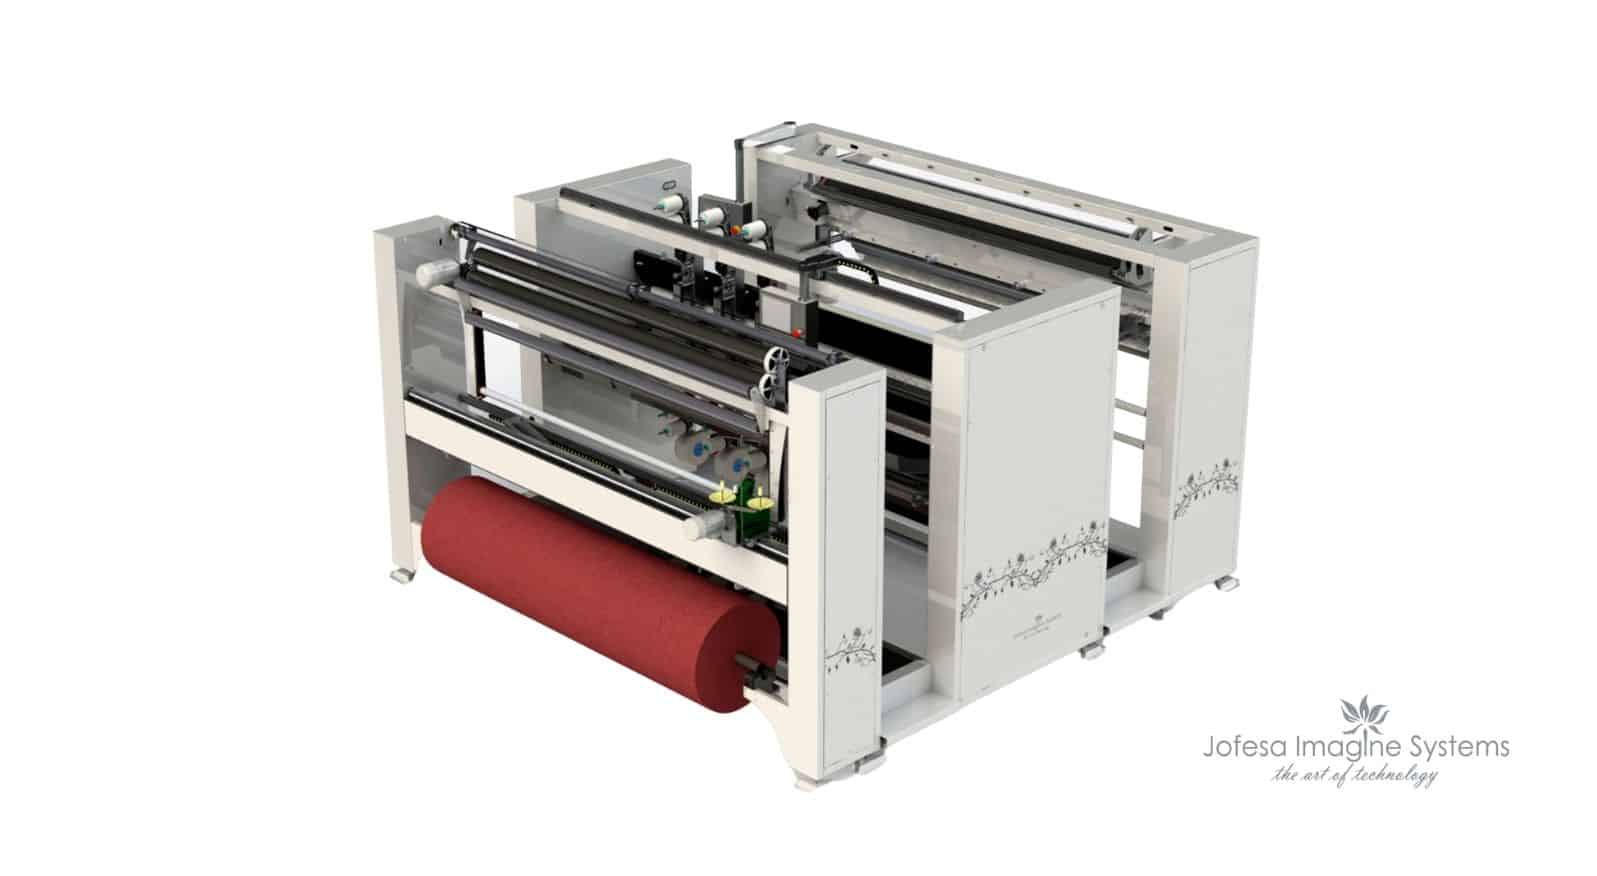 Máquinas têxteis para fábricas têxteis de cortinas em portugal - Multistitch - Imagen en 3D